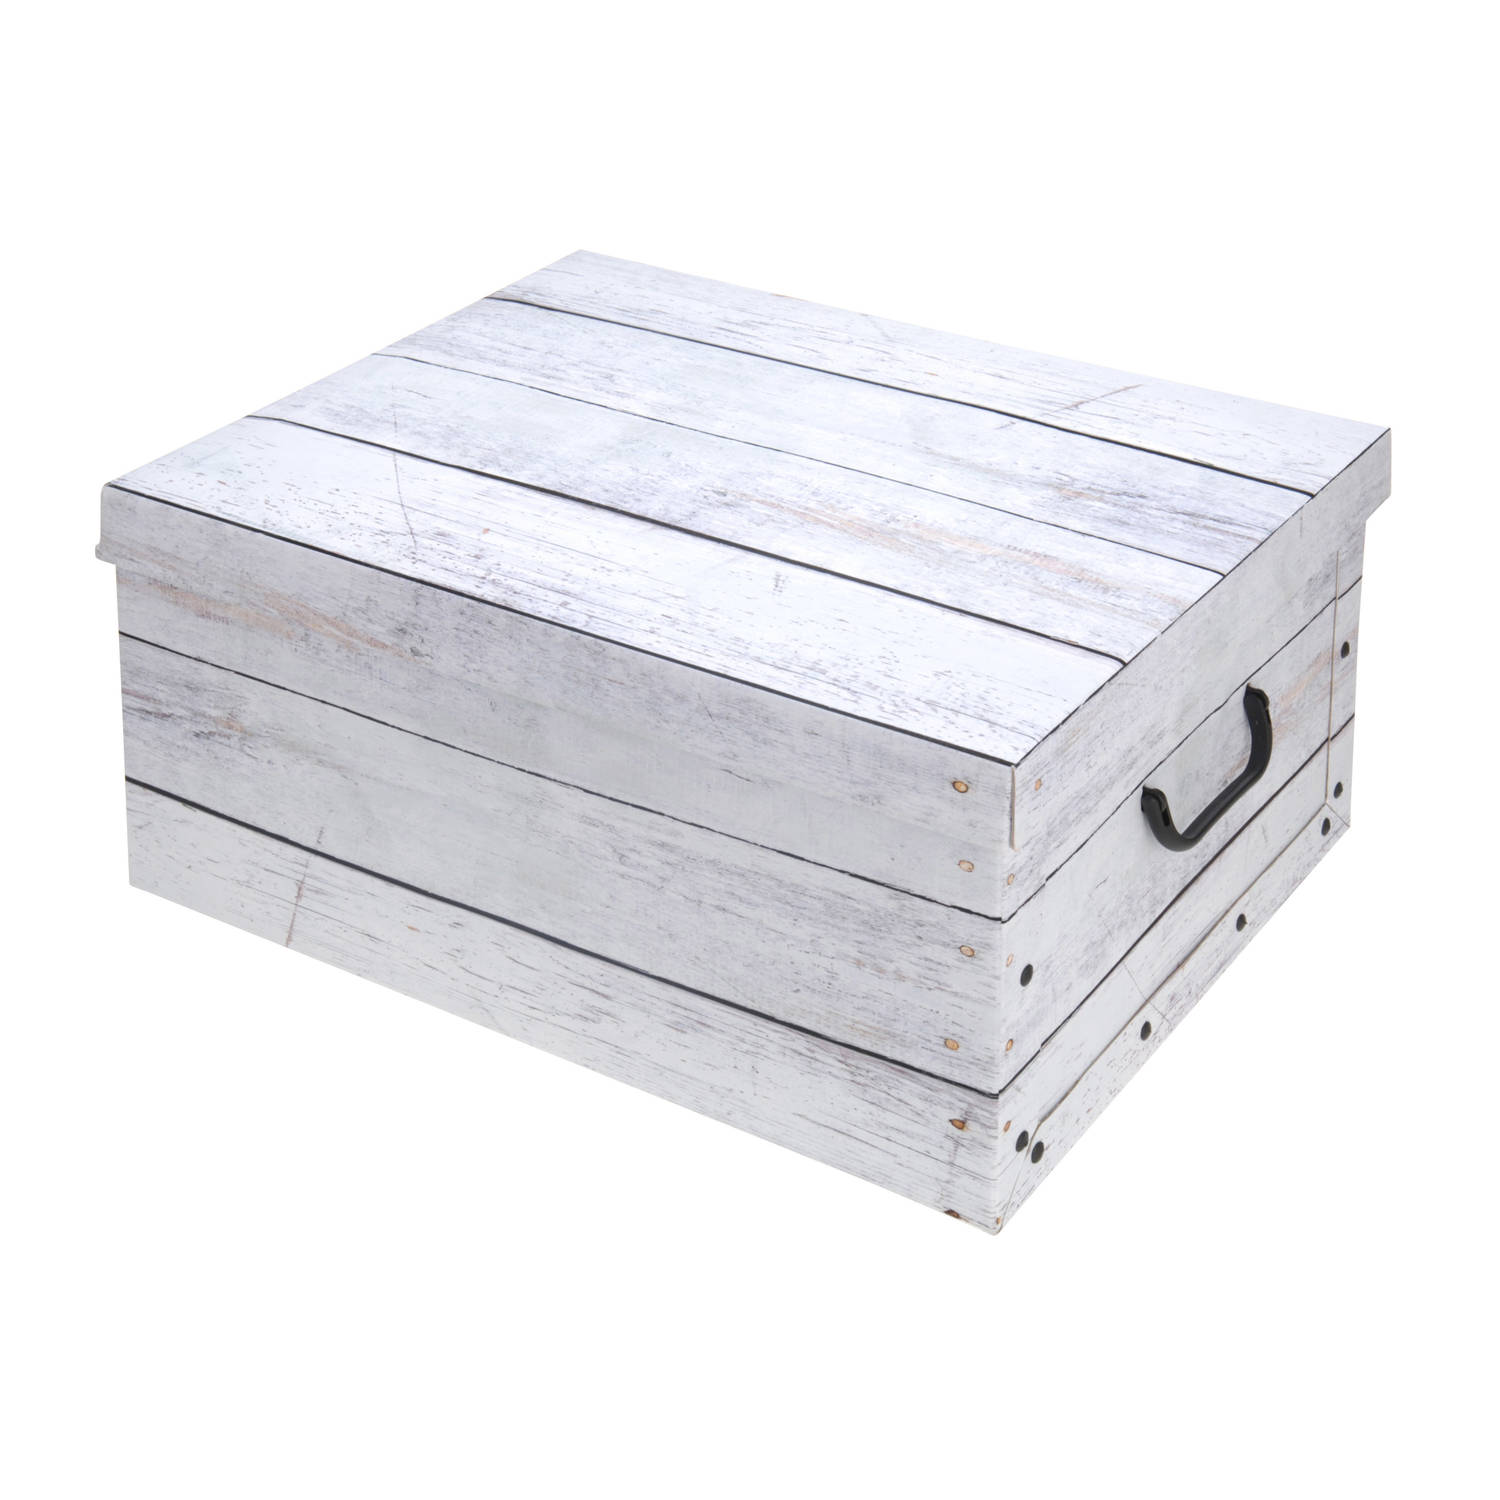 Zonnig links Gewoon doen Set van 2x stuks opbergdoos/opberg box van karton met hout print wit 37 x  30 x 16 cm - Opbergbox | Blokker